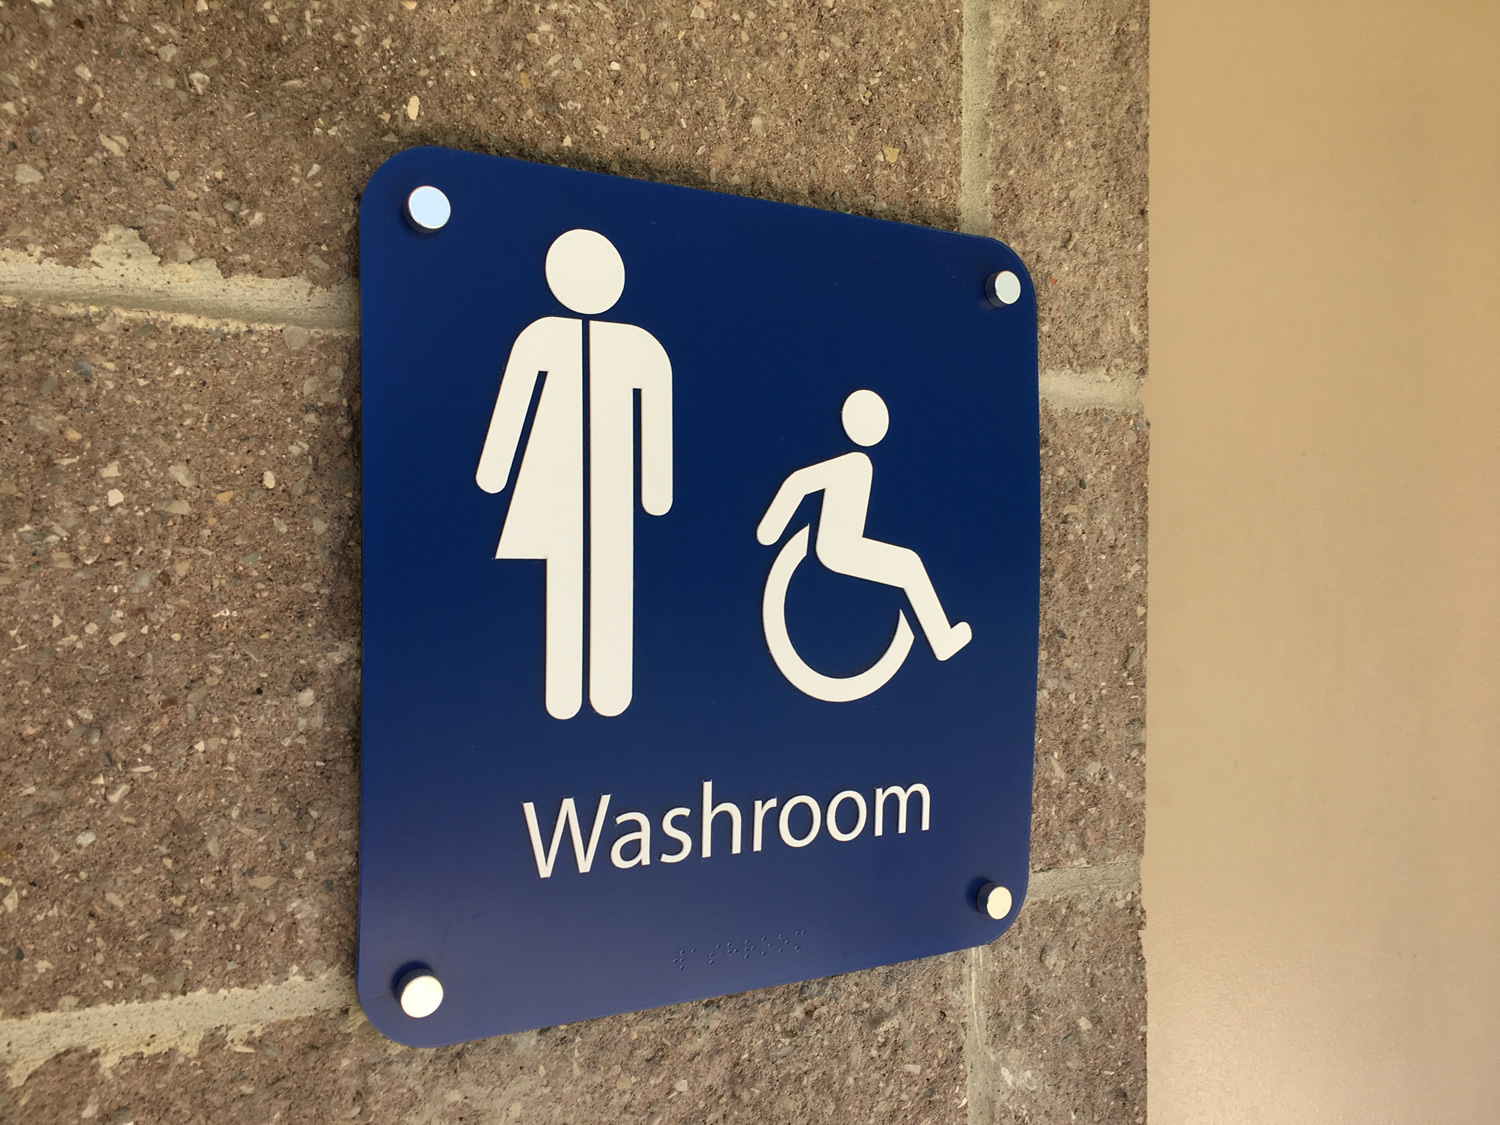 Burlington Park Accessibility Improvements